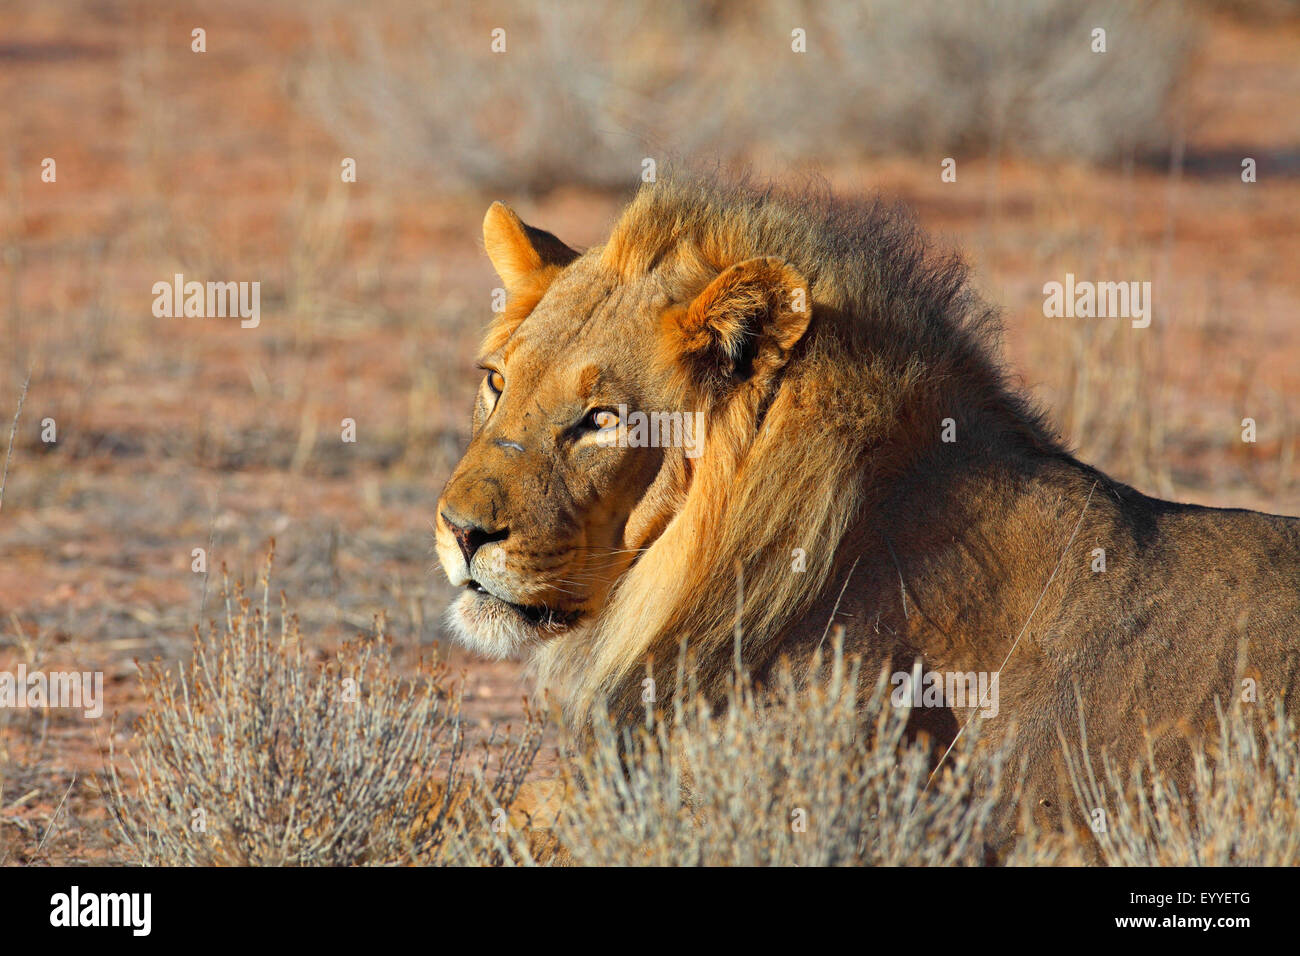 Lion (Panthera leo), homme, portrait , Afrique du Sud, Kgalagadi Transfrontier National Park Banque D'Images